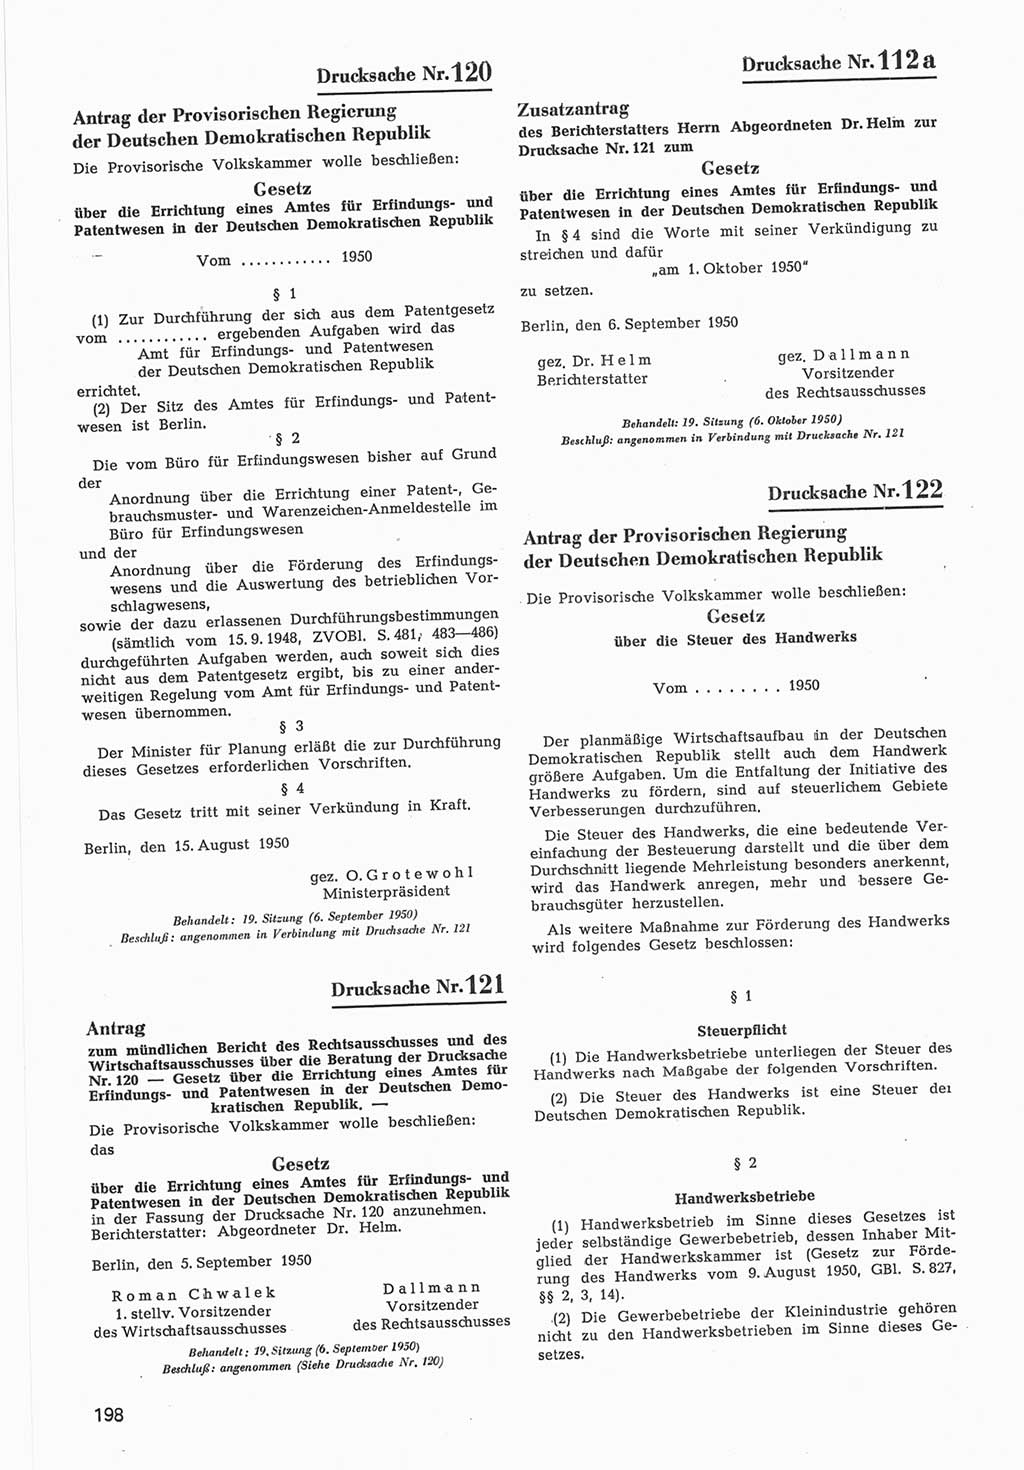 Provisorische Volkskammer (VK) der Deutschen Demokratischen Republik (DDR) 1949-1950, Dokument 800 (Prov. VK DDR 1949-1950, Dok. 800)